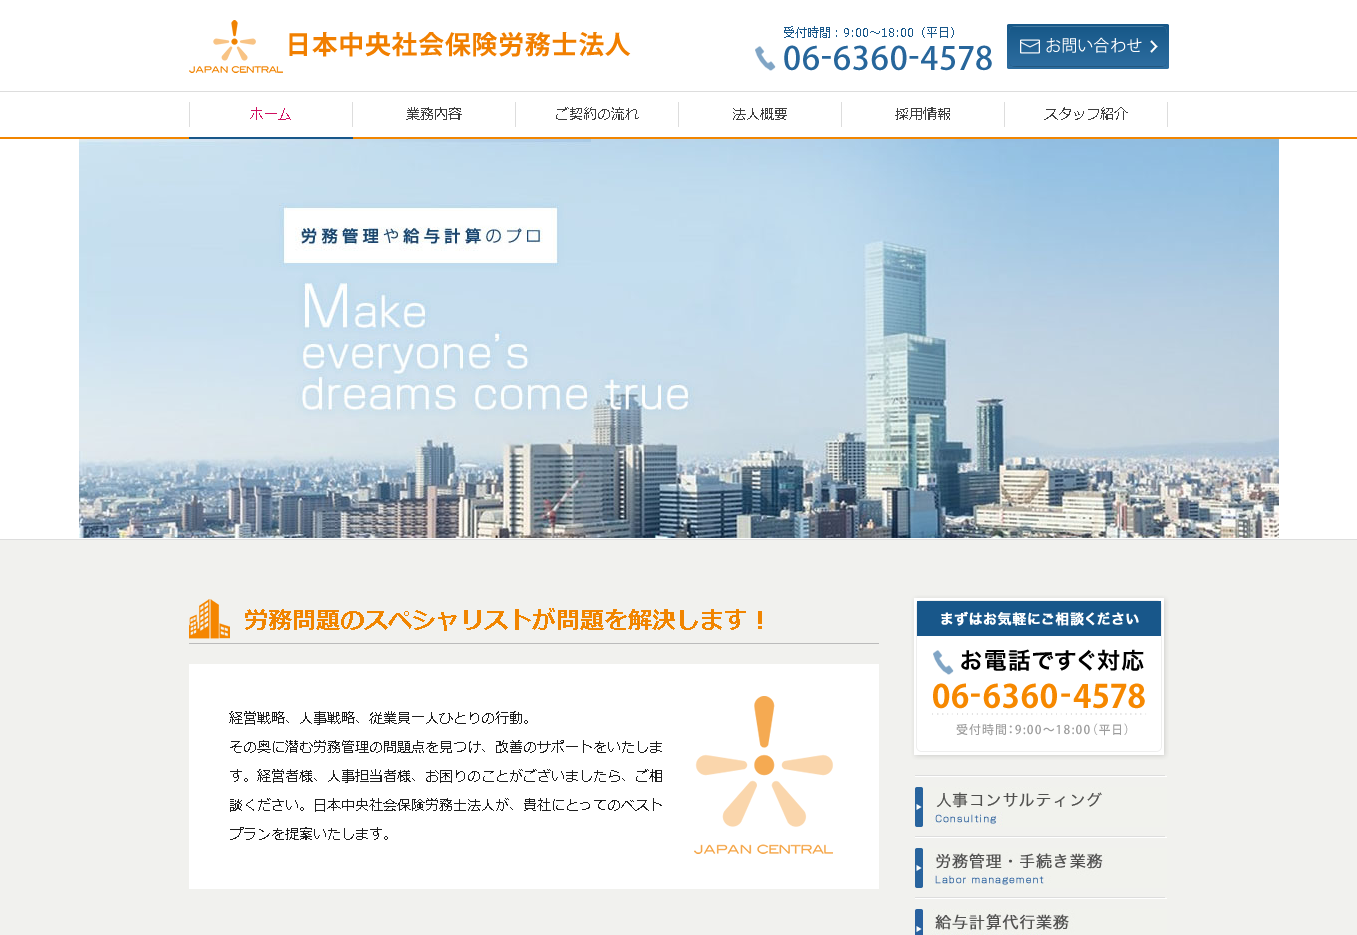 日本中央社会保険労務士法人の日本中央社会保険労務士法人サービス